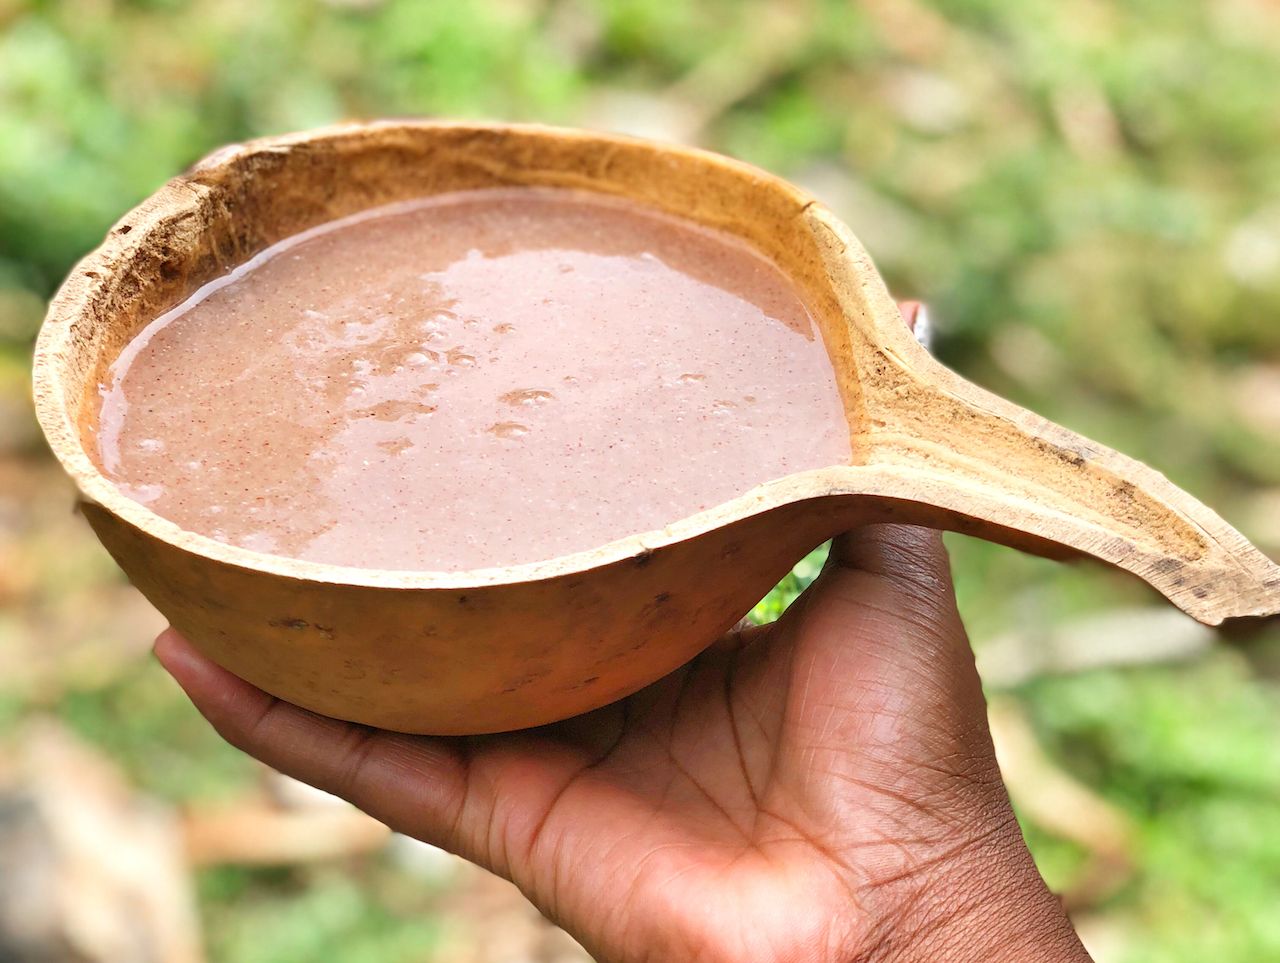 African Calabash porridge